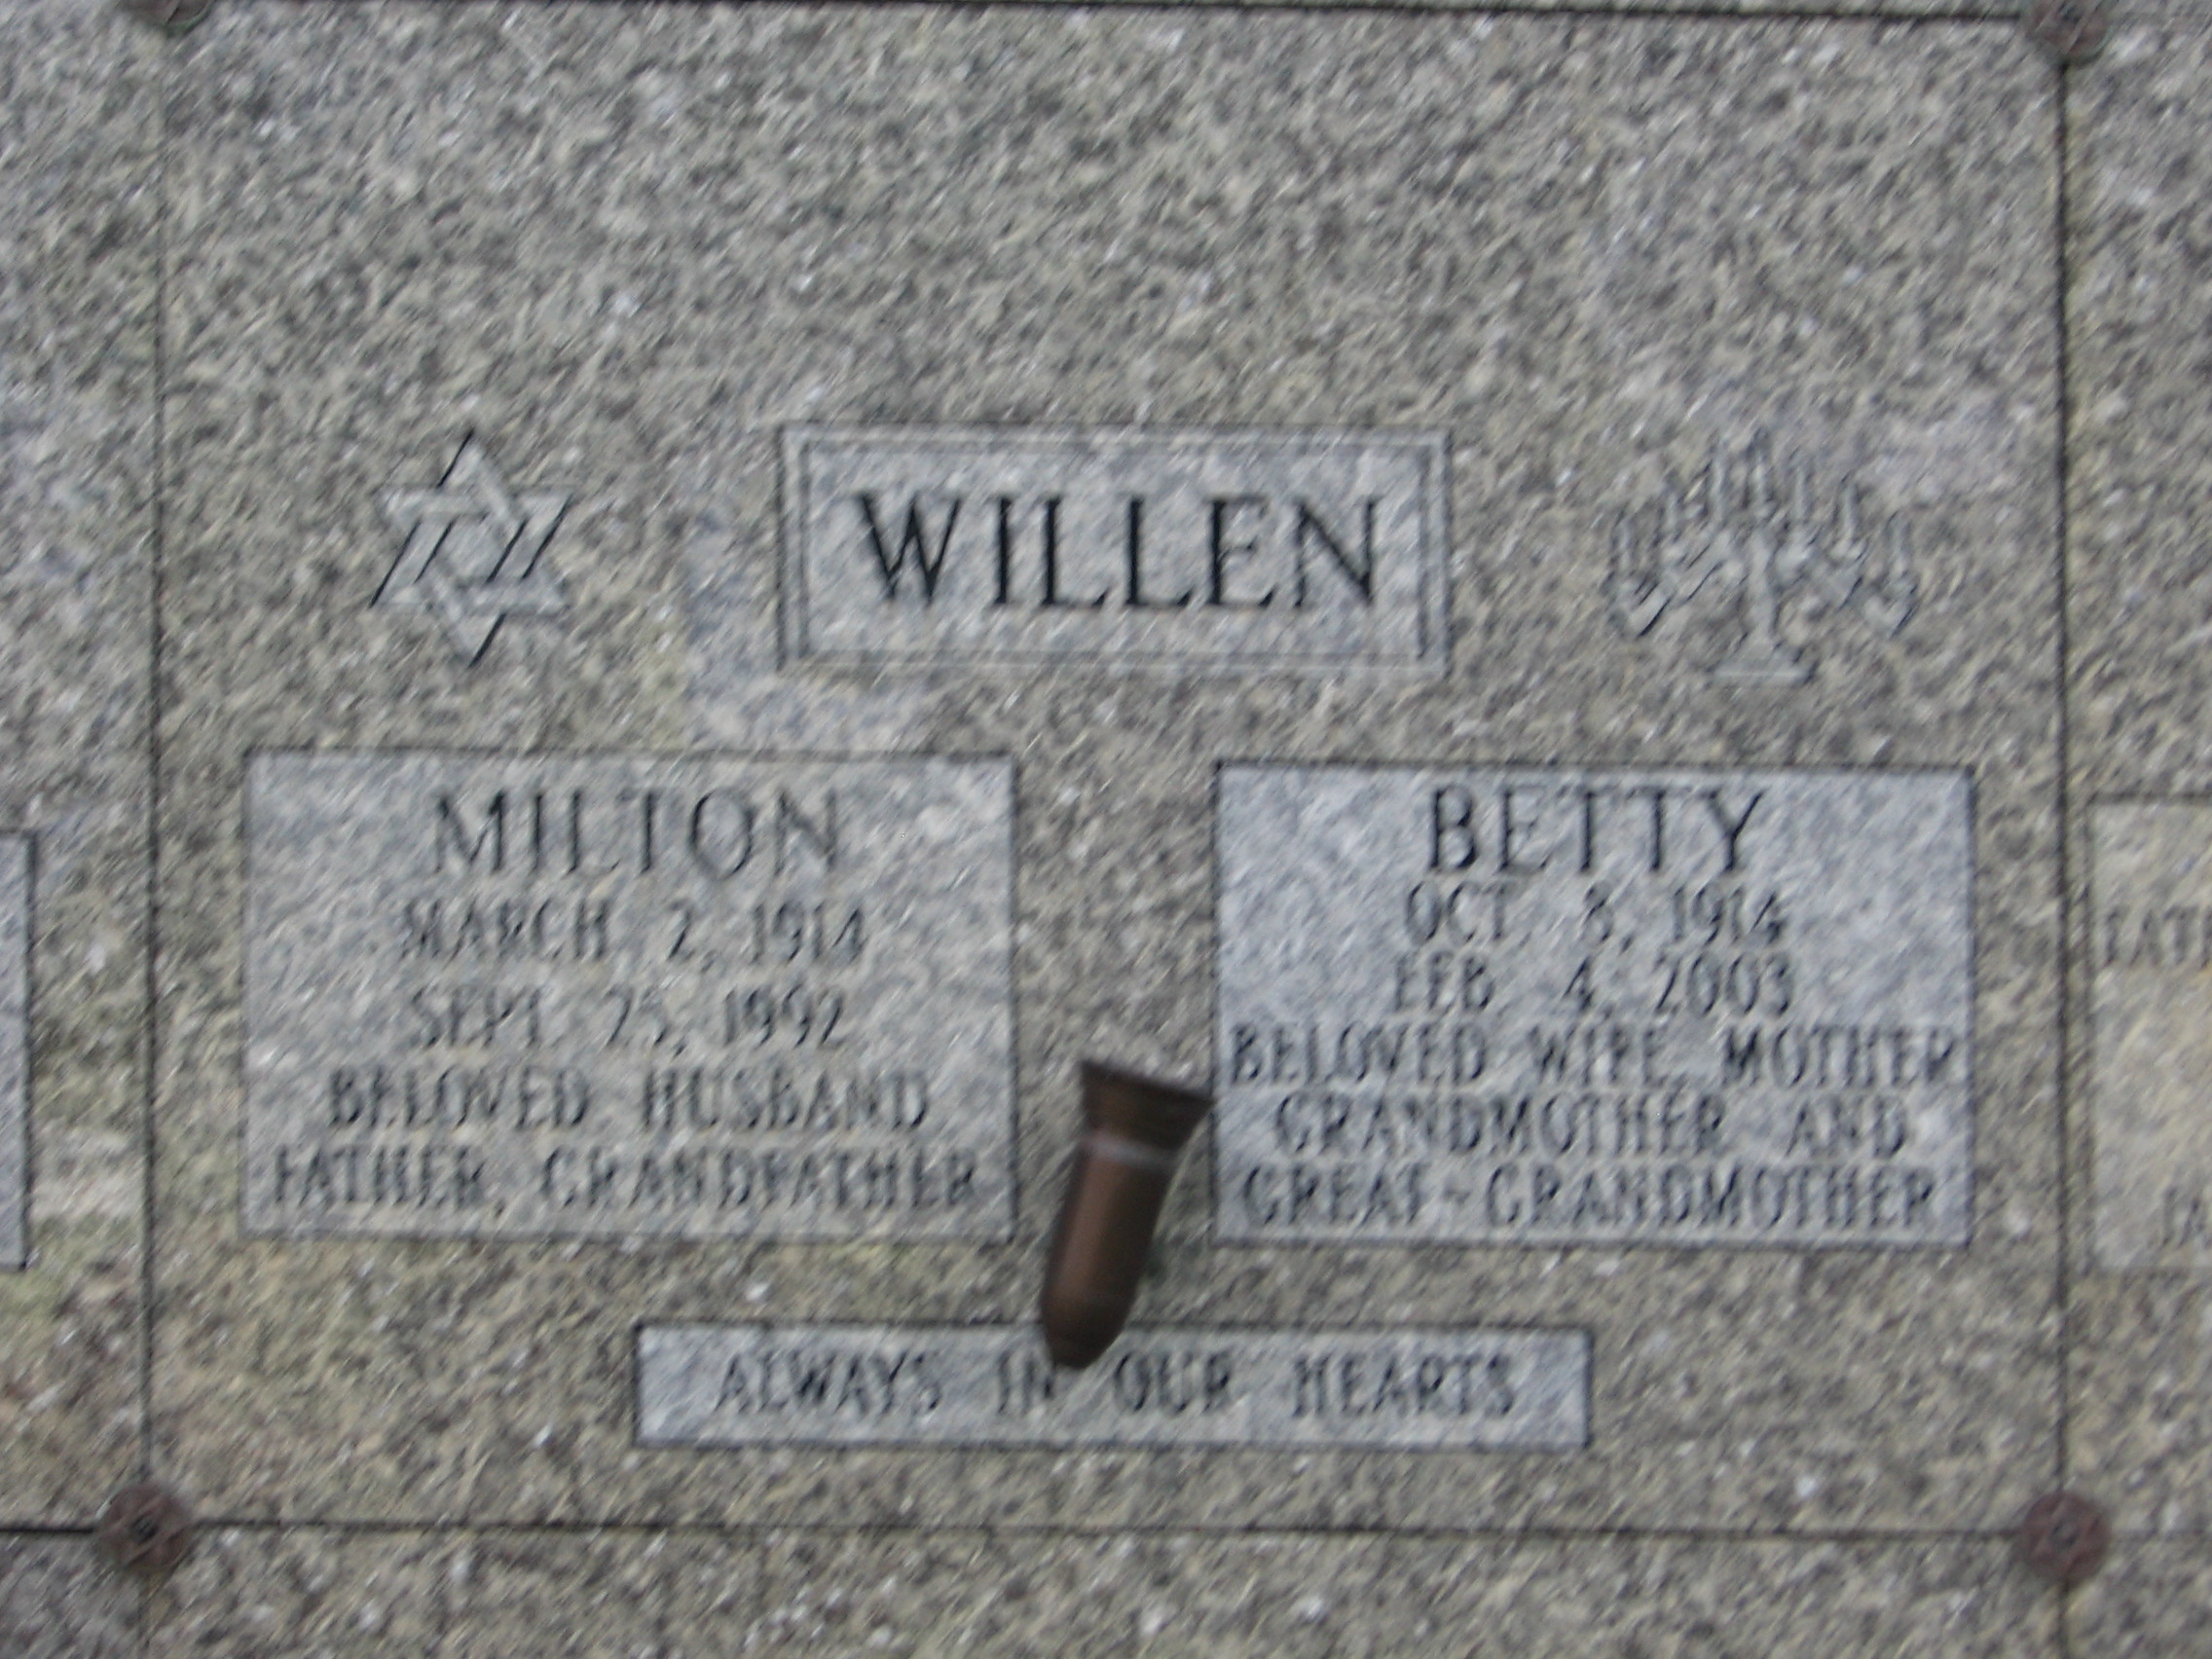 Betty Willen